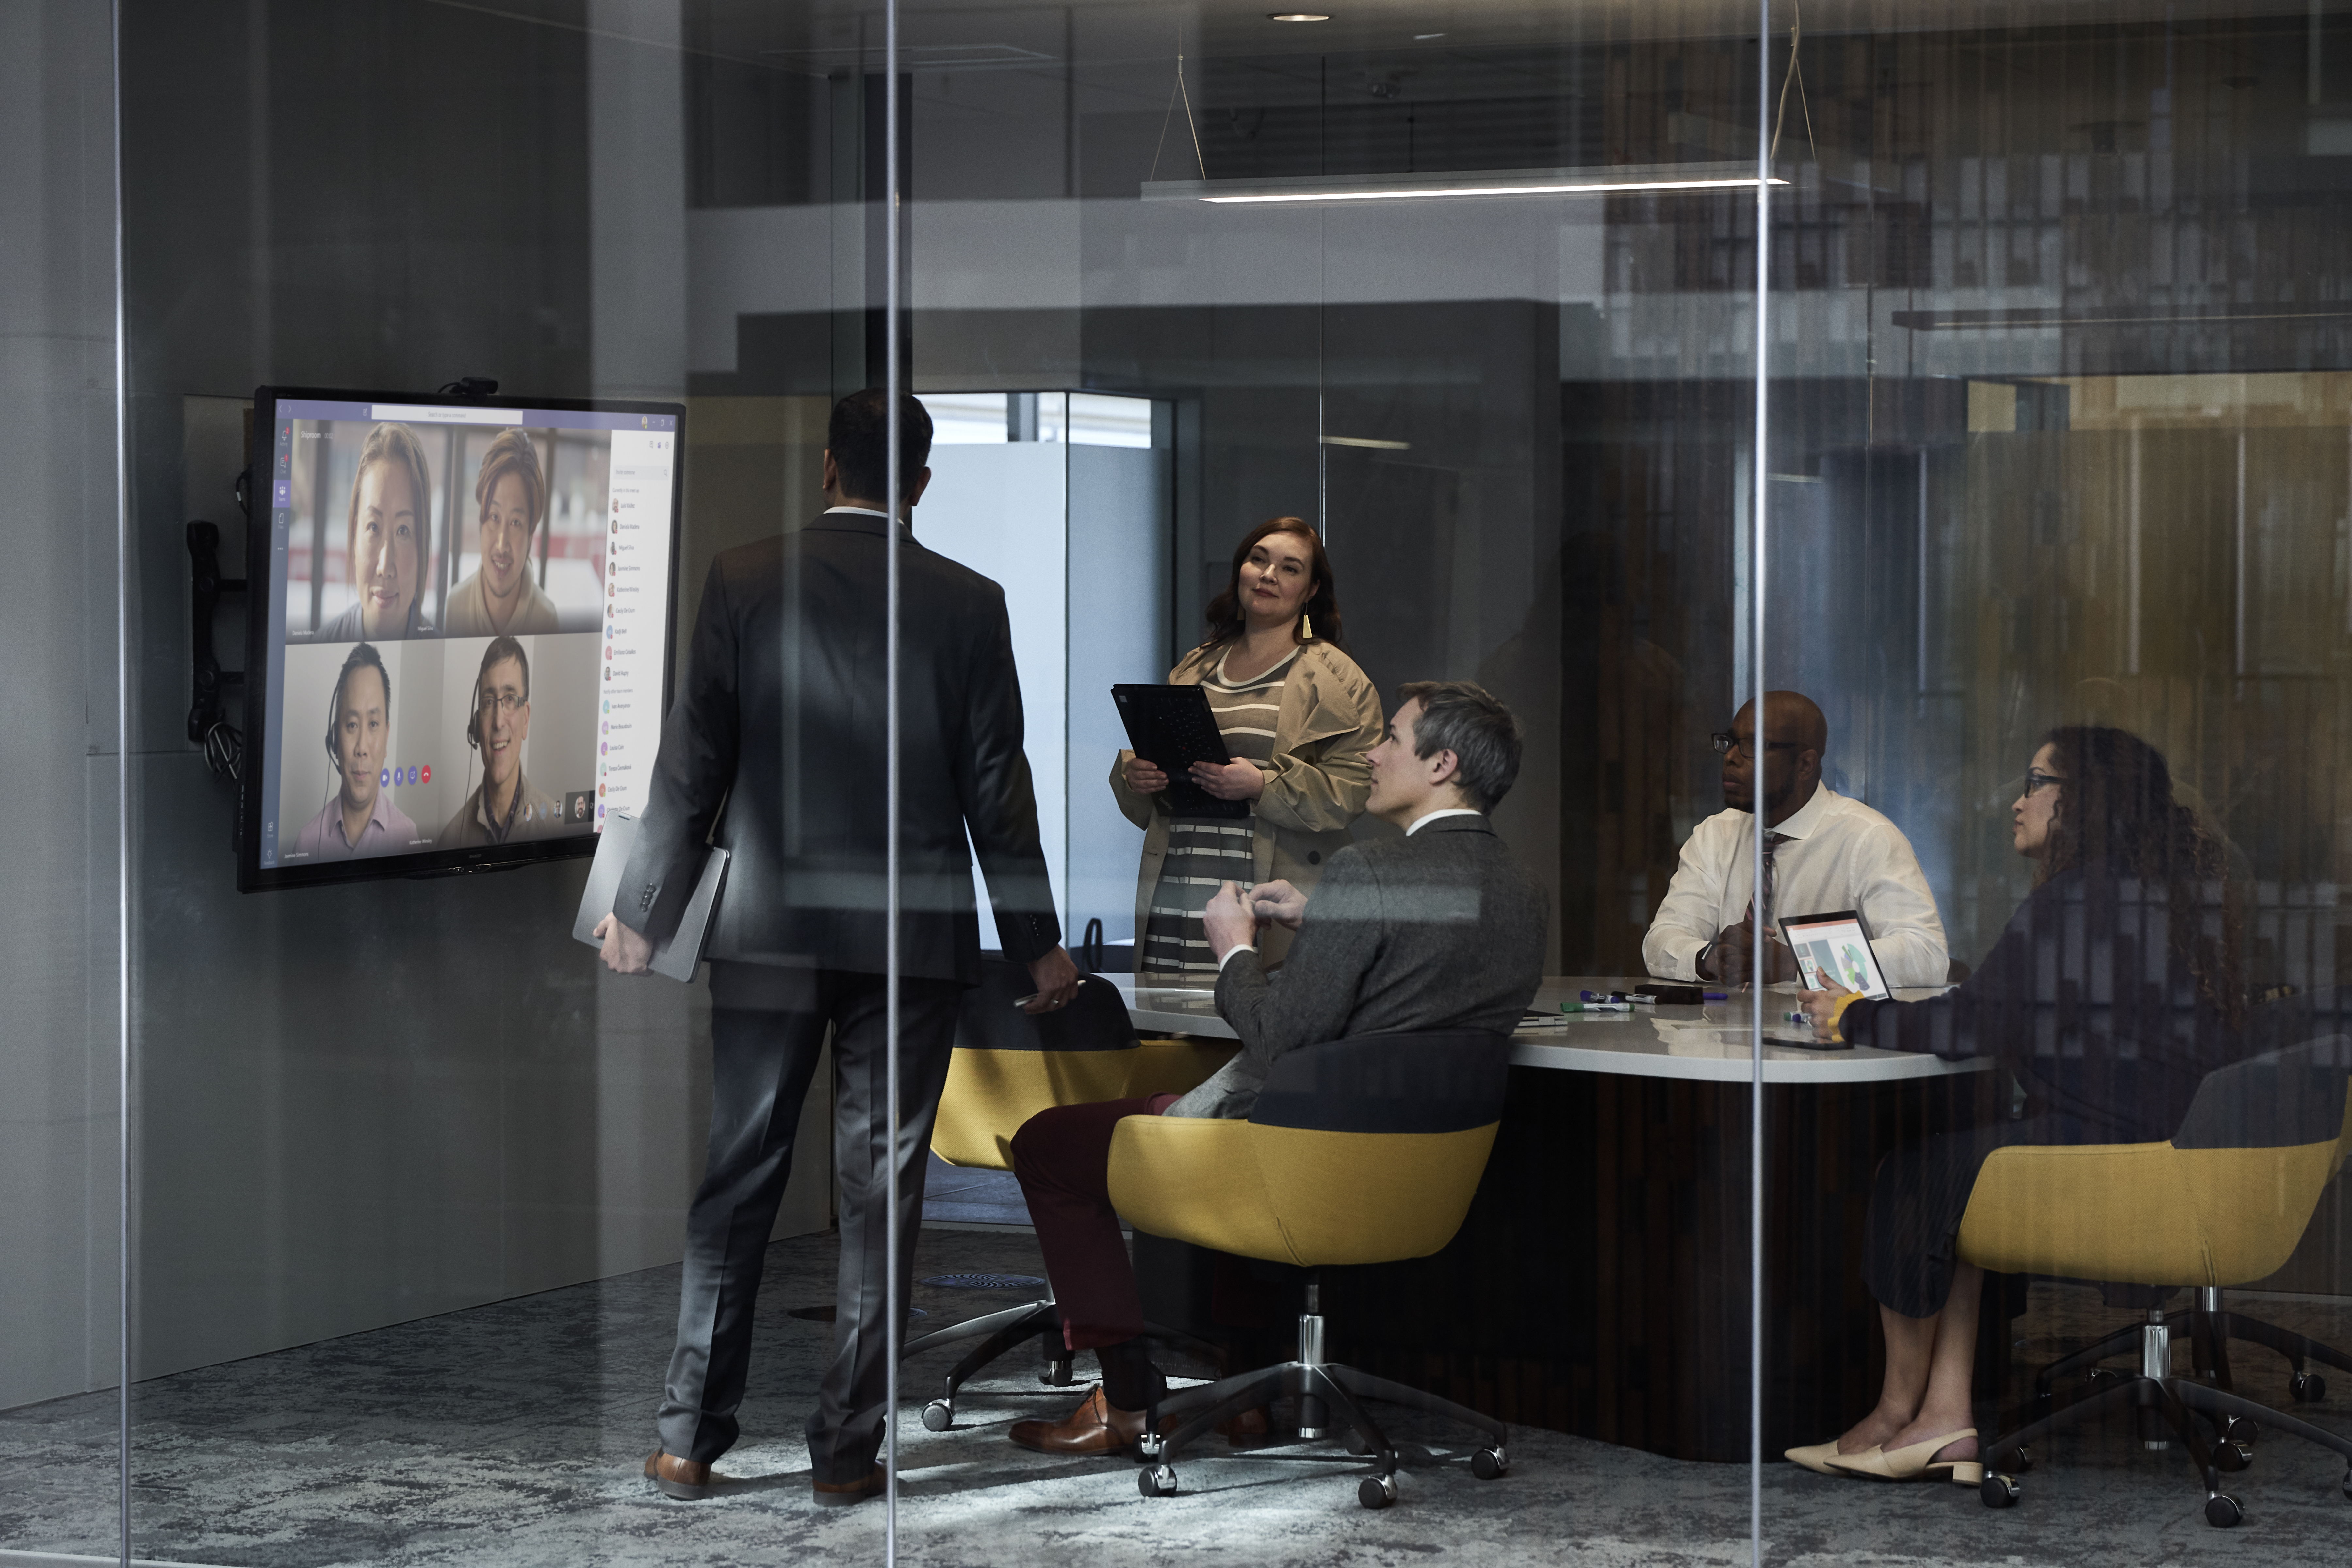 Un groupe d'employés de bureau lors d'une réunion discute d'images sur grand écran.